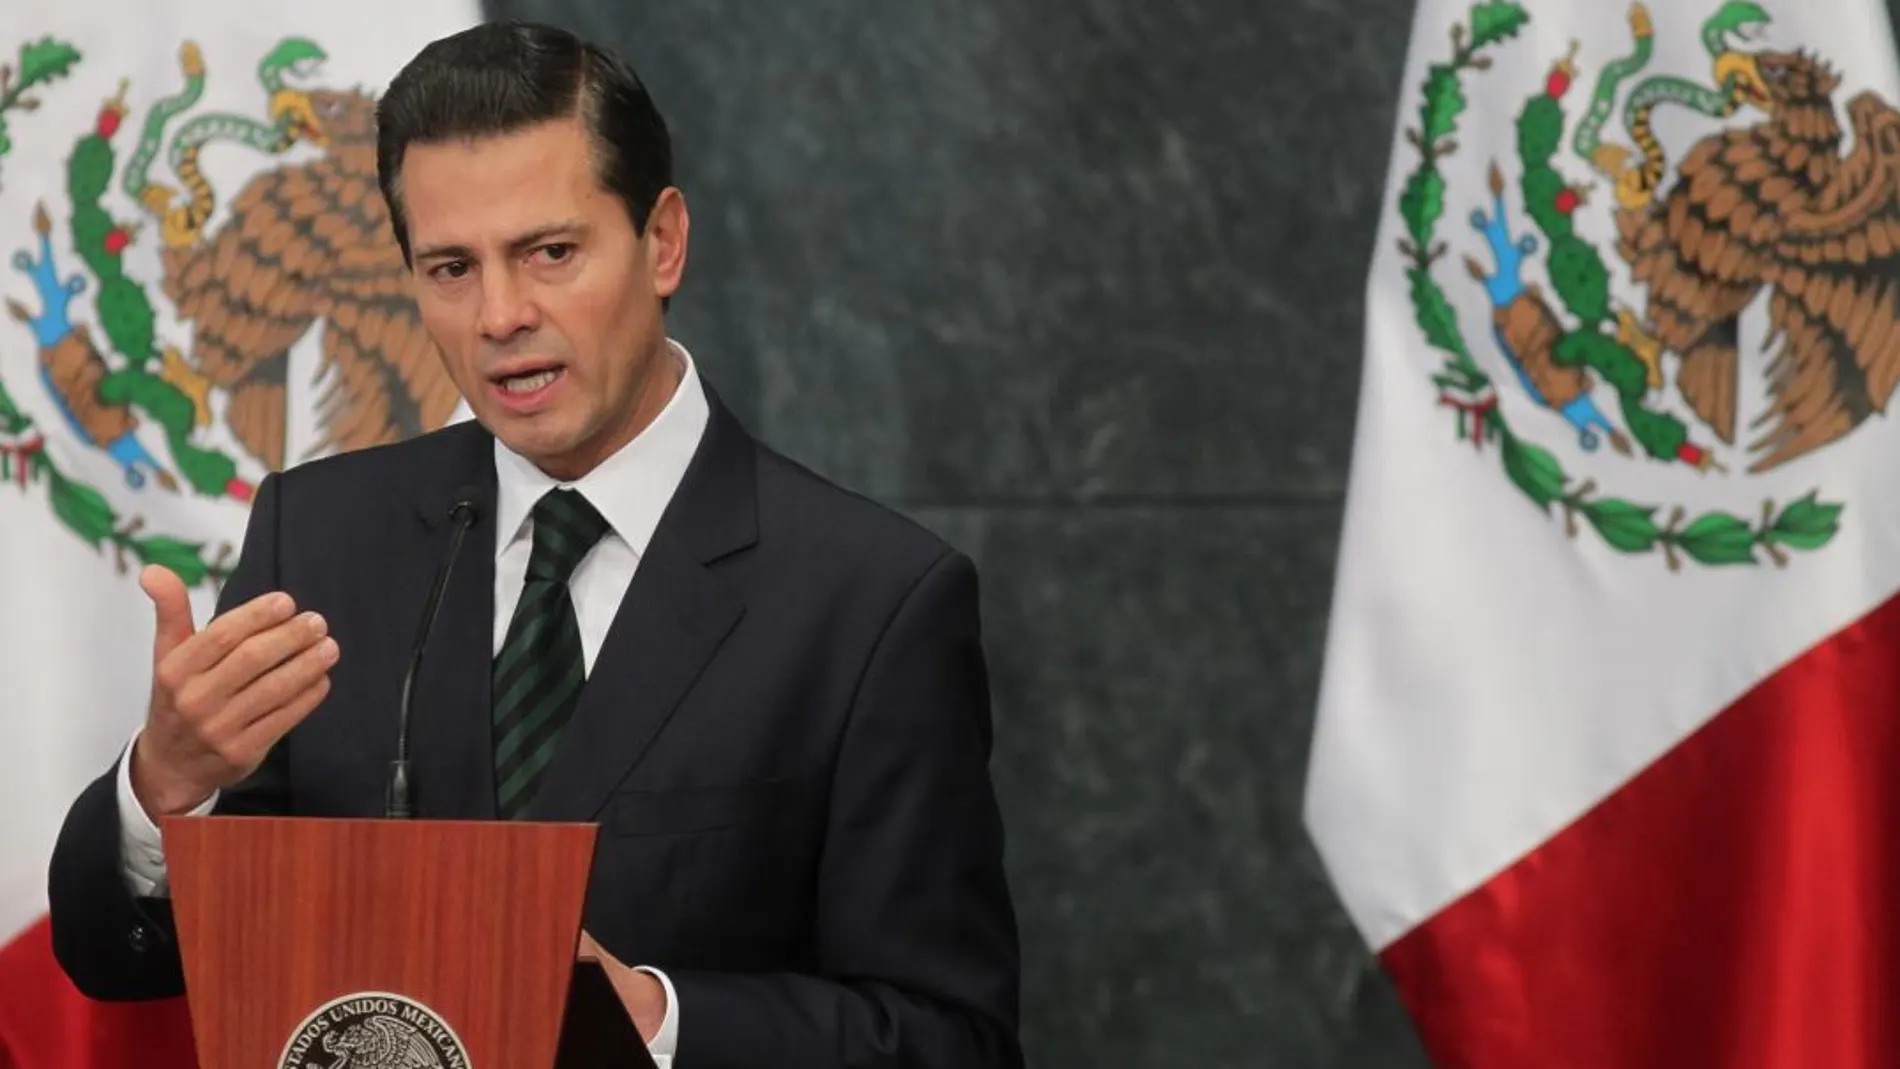 El presidente de México, Enrique Peña Nieto, en una imagen de archivo / Efe